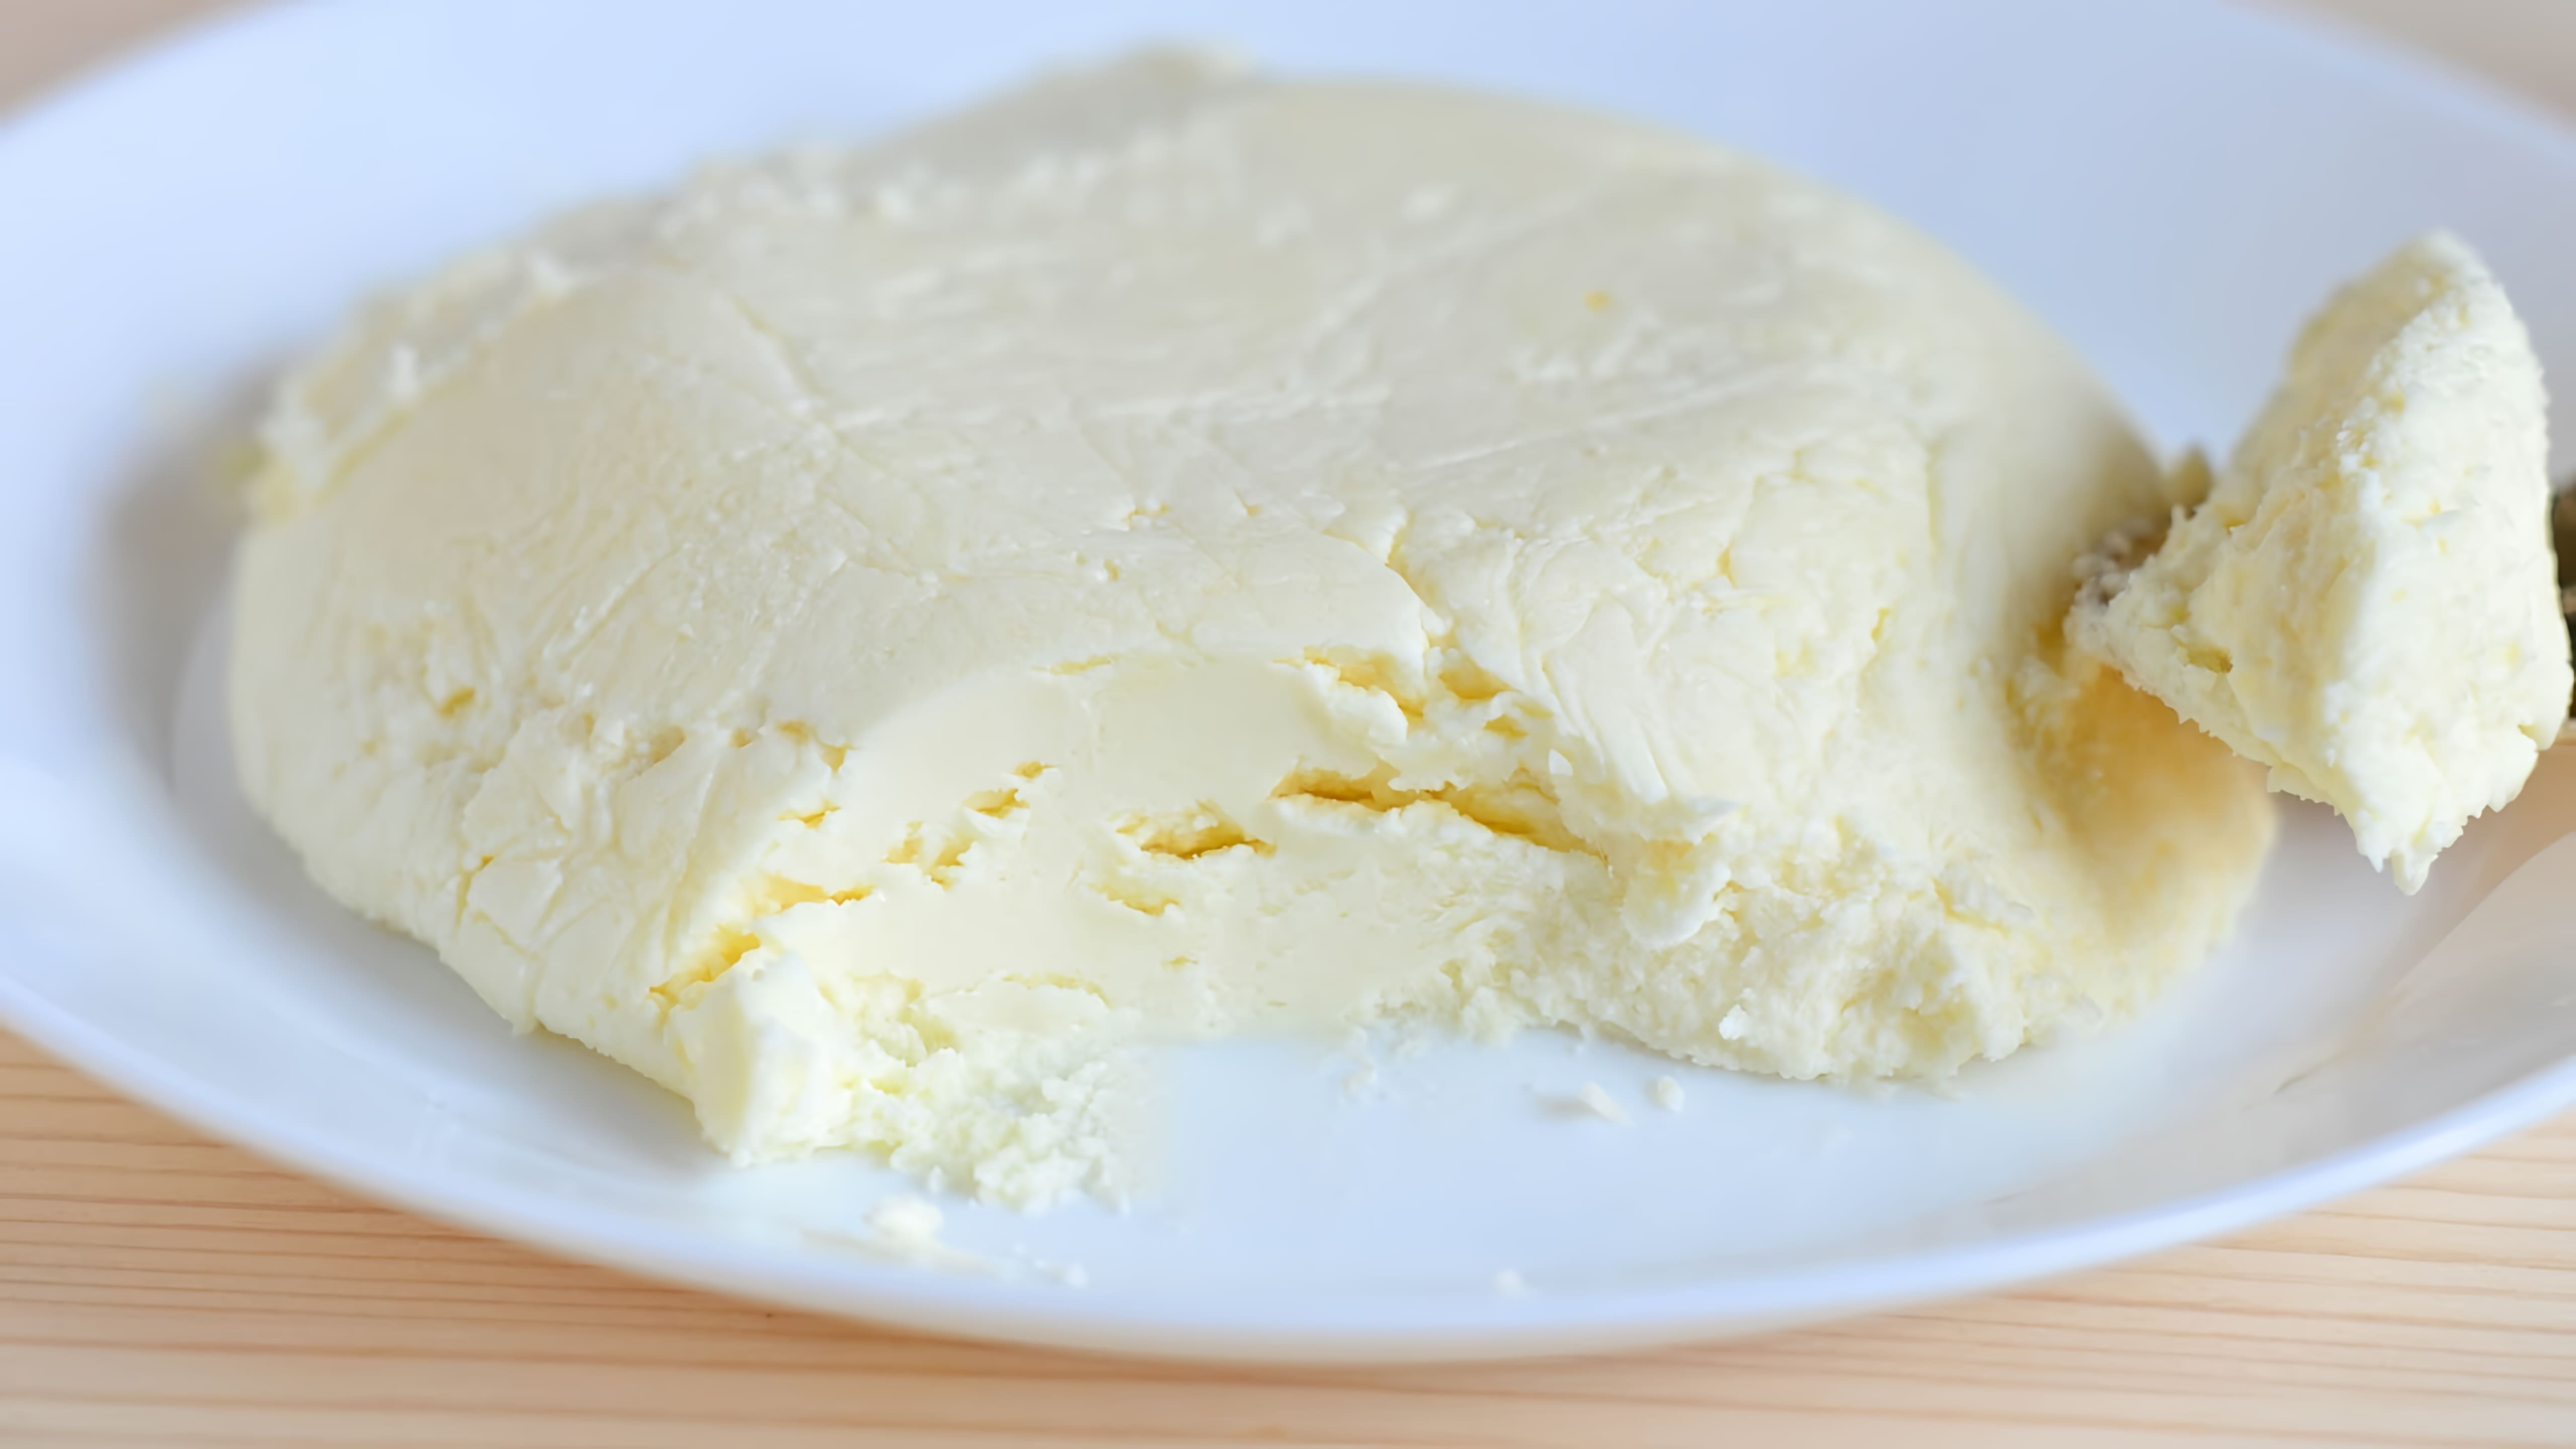 В данном видео показано, как приготовить сливочный сыр маскарпоне в домашних условиях